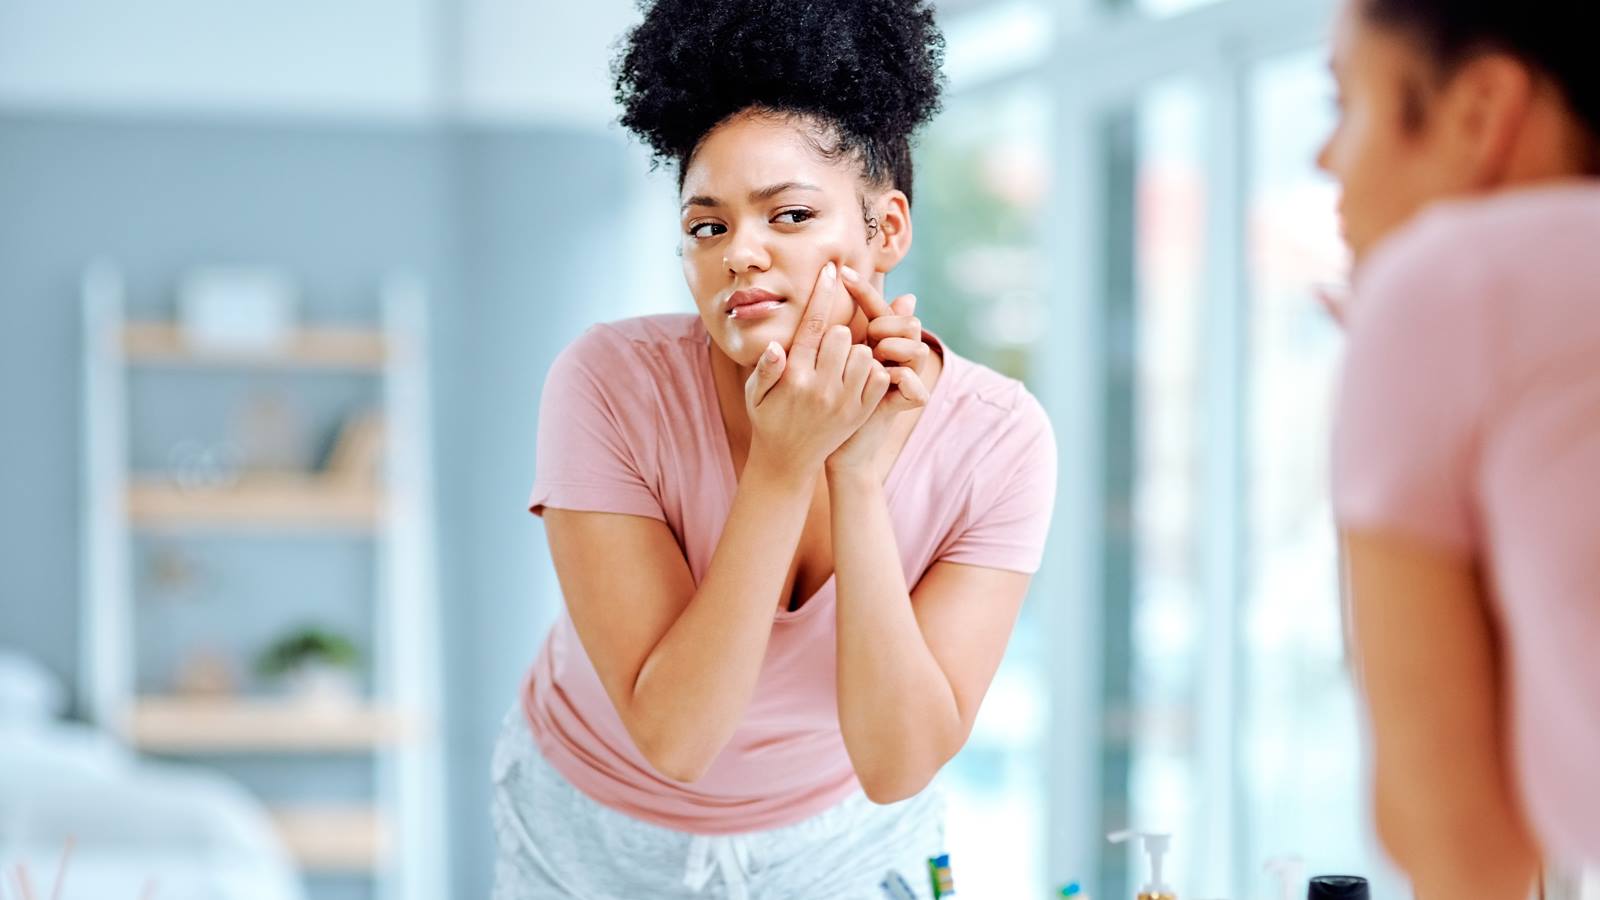 Should You Pop Pimple?